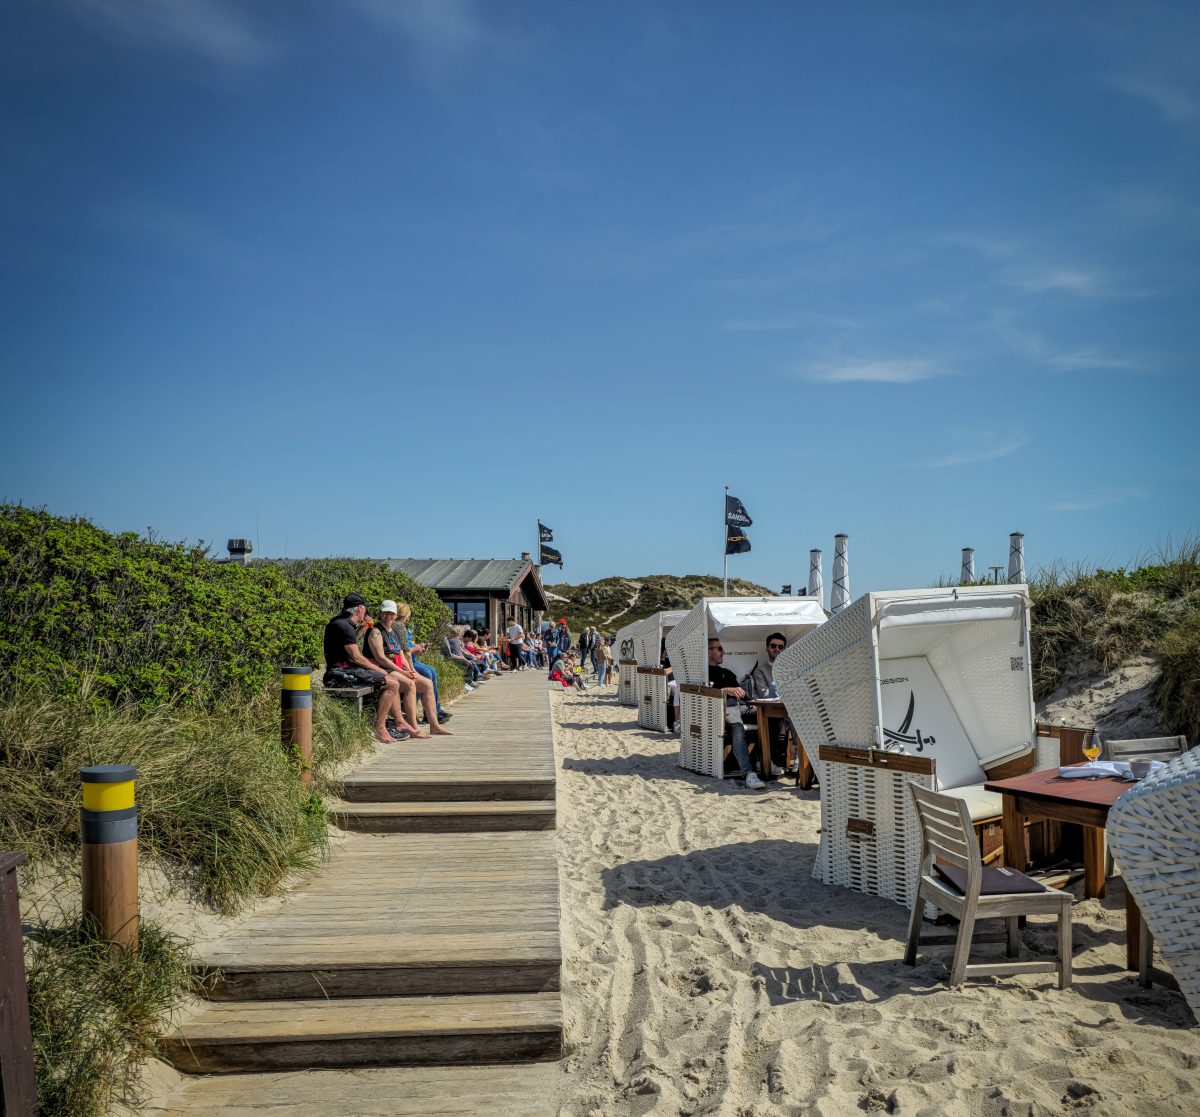 Urlaub an der Nordsee: Schild vermiest Strand-Urlaubern den Spaß!